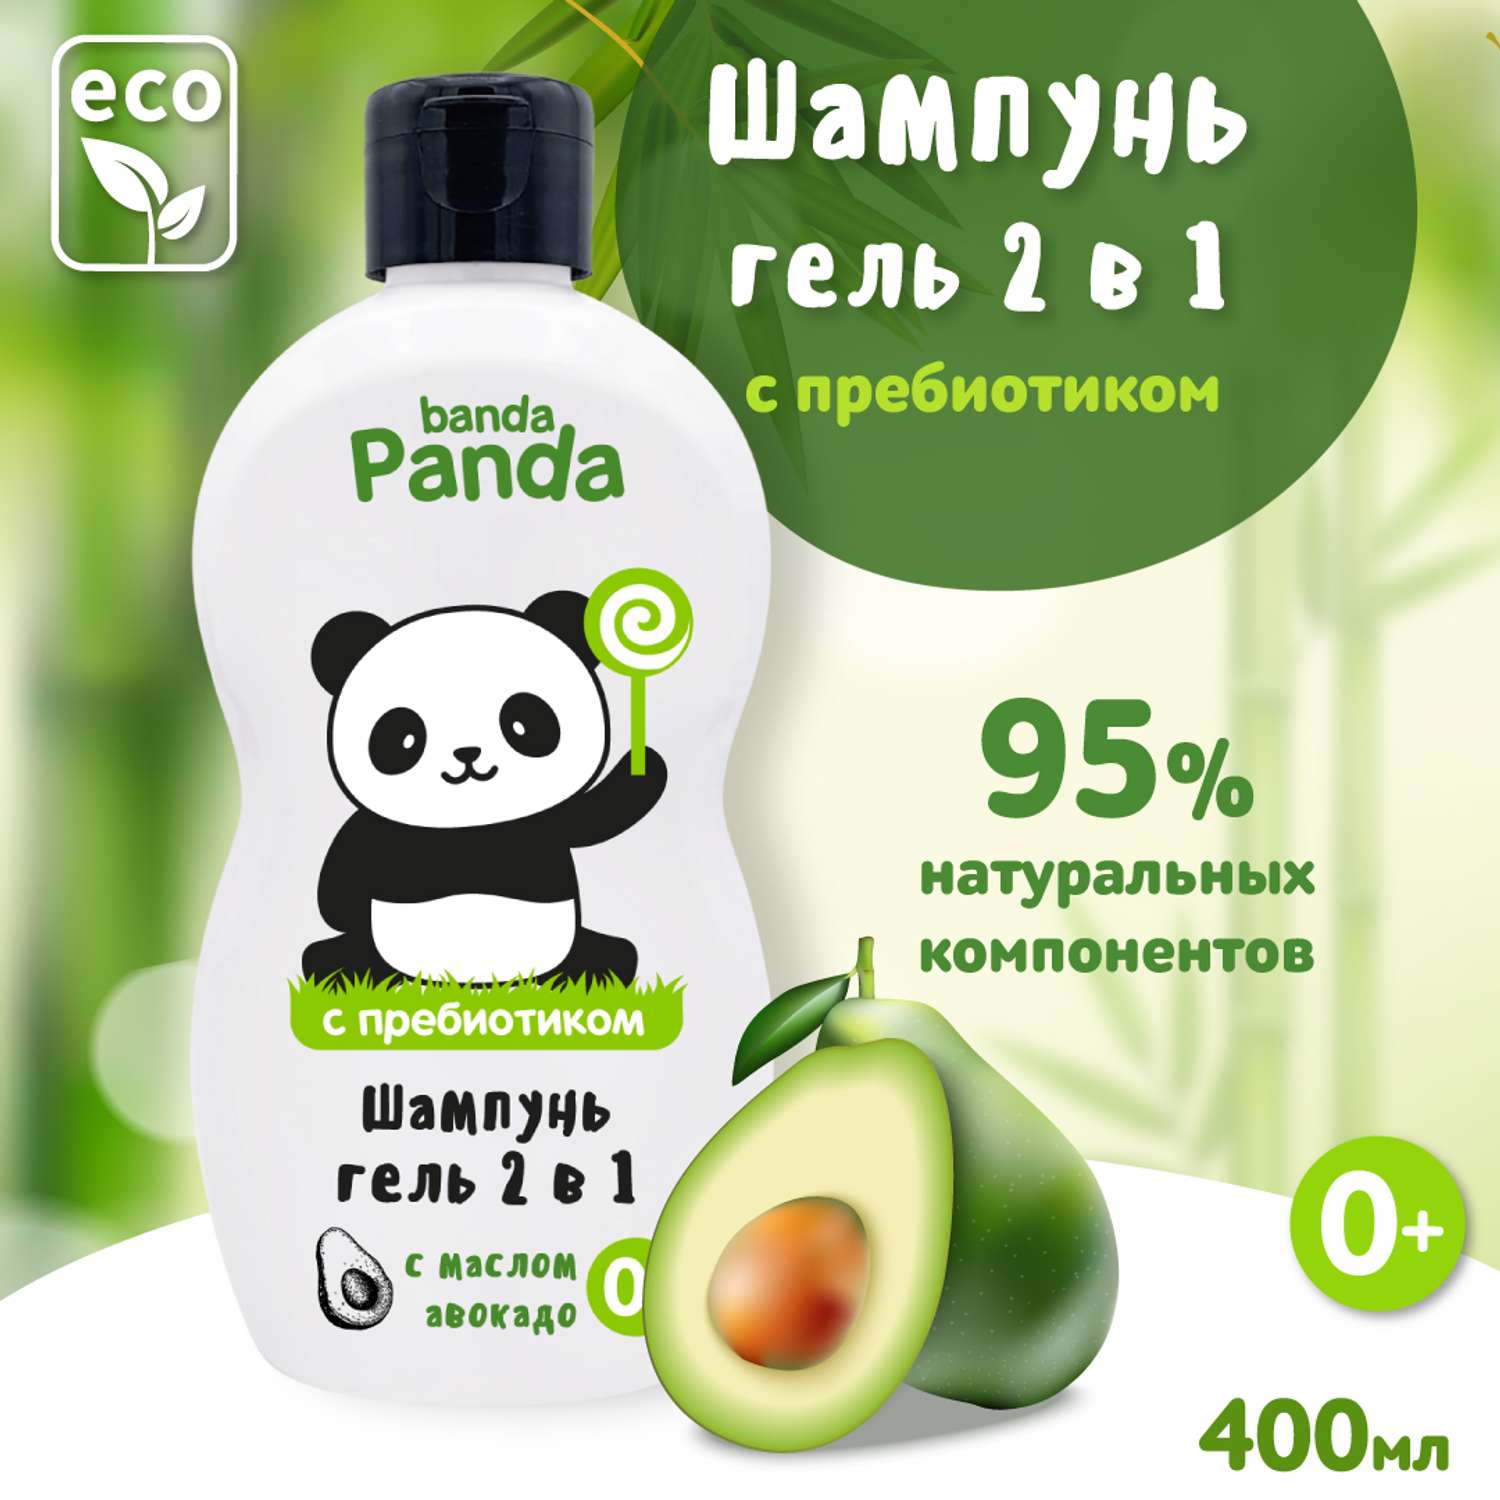 Шампунь-гель с Пребиотиком banda Panda 400мл для купания 2в1 с маслом авокадо 0+ - фото 1